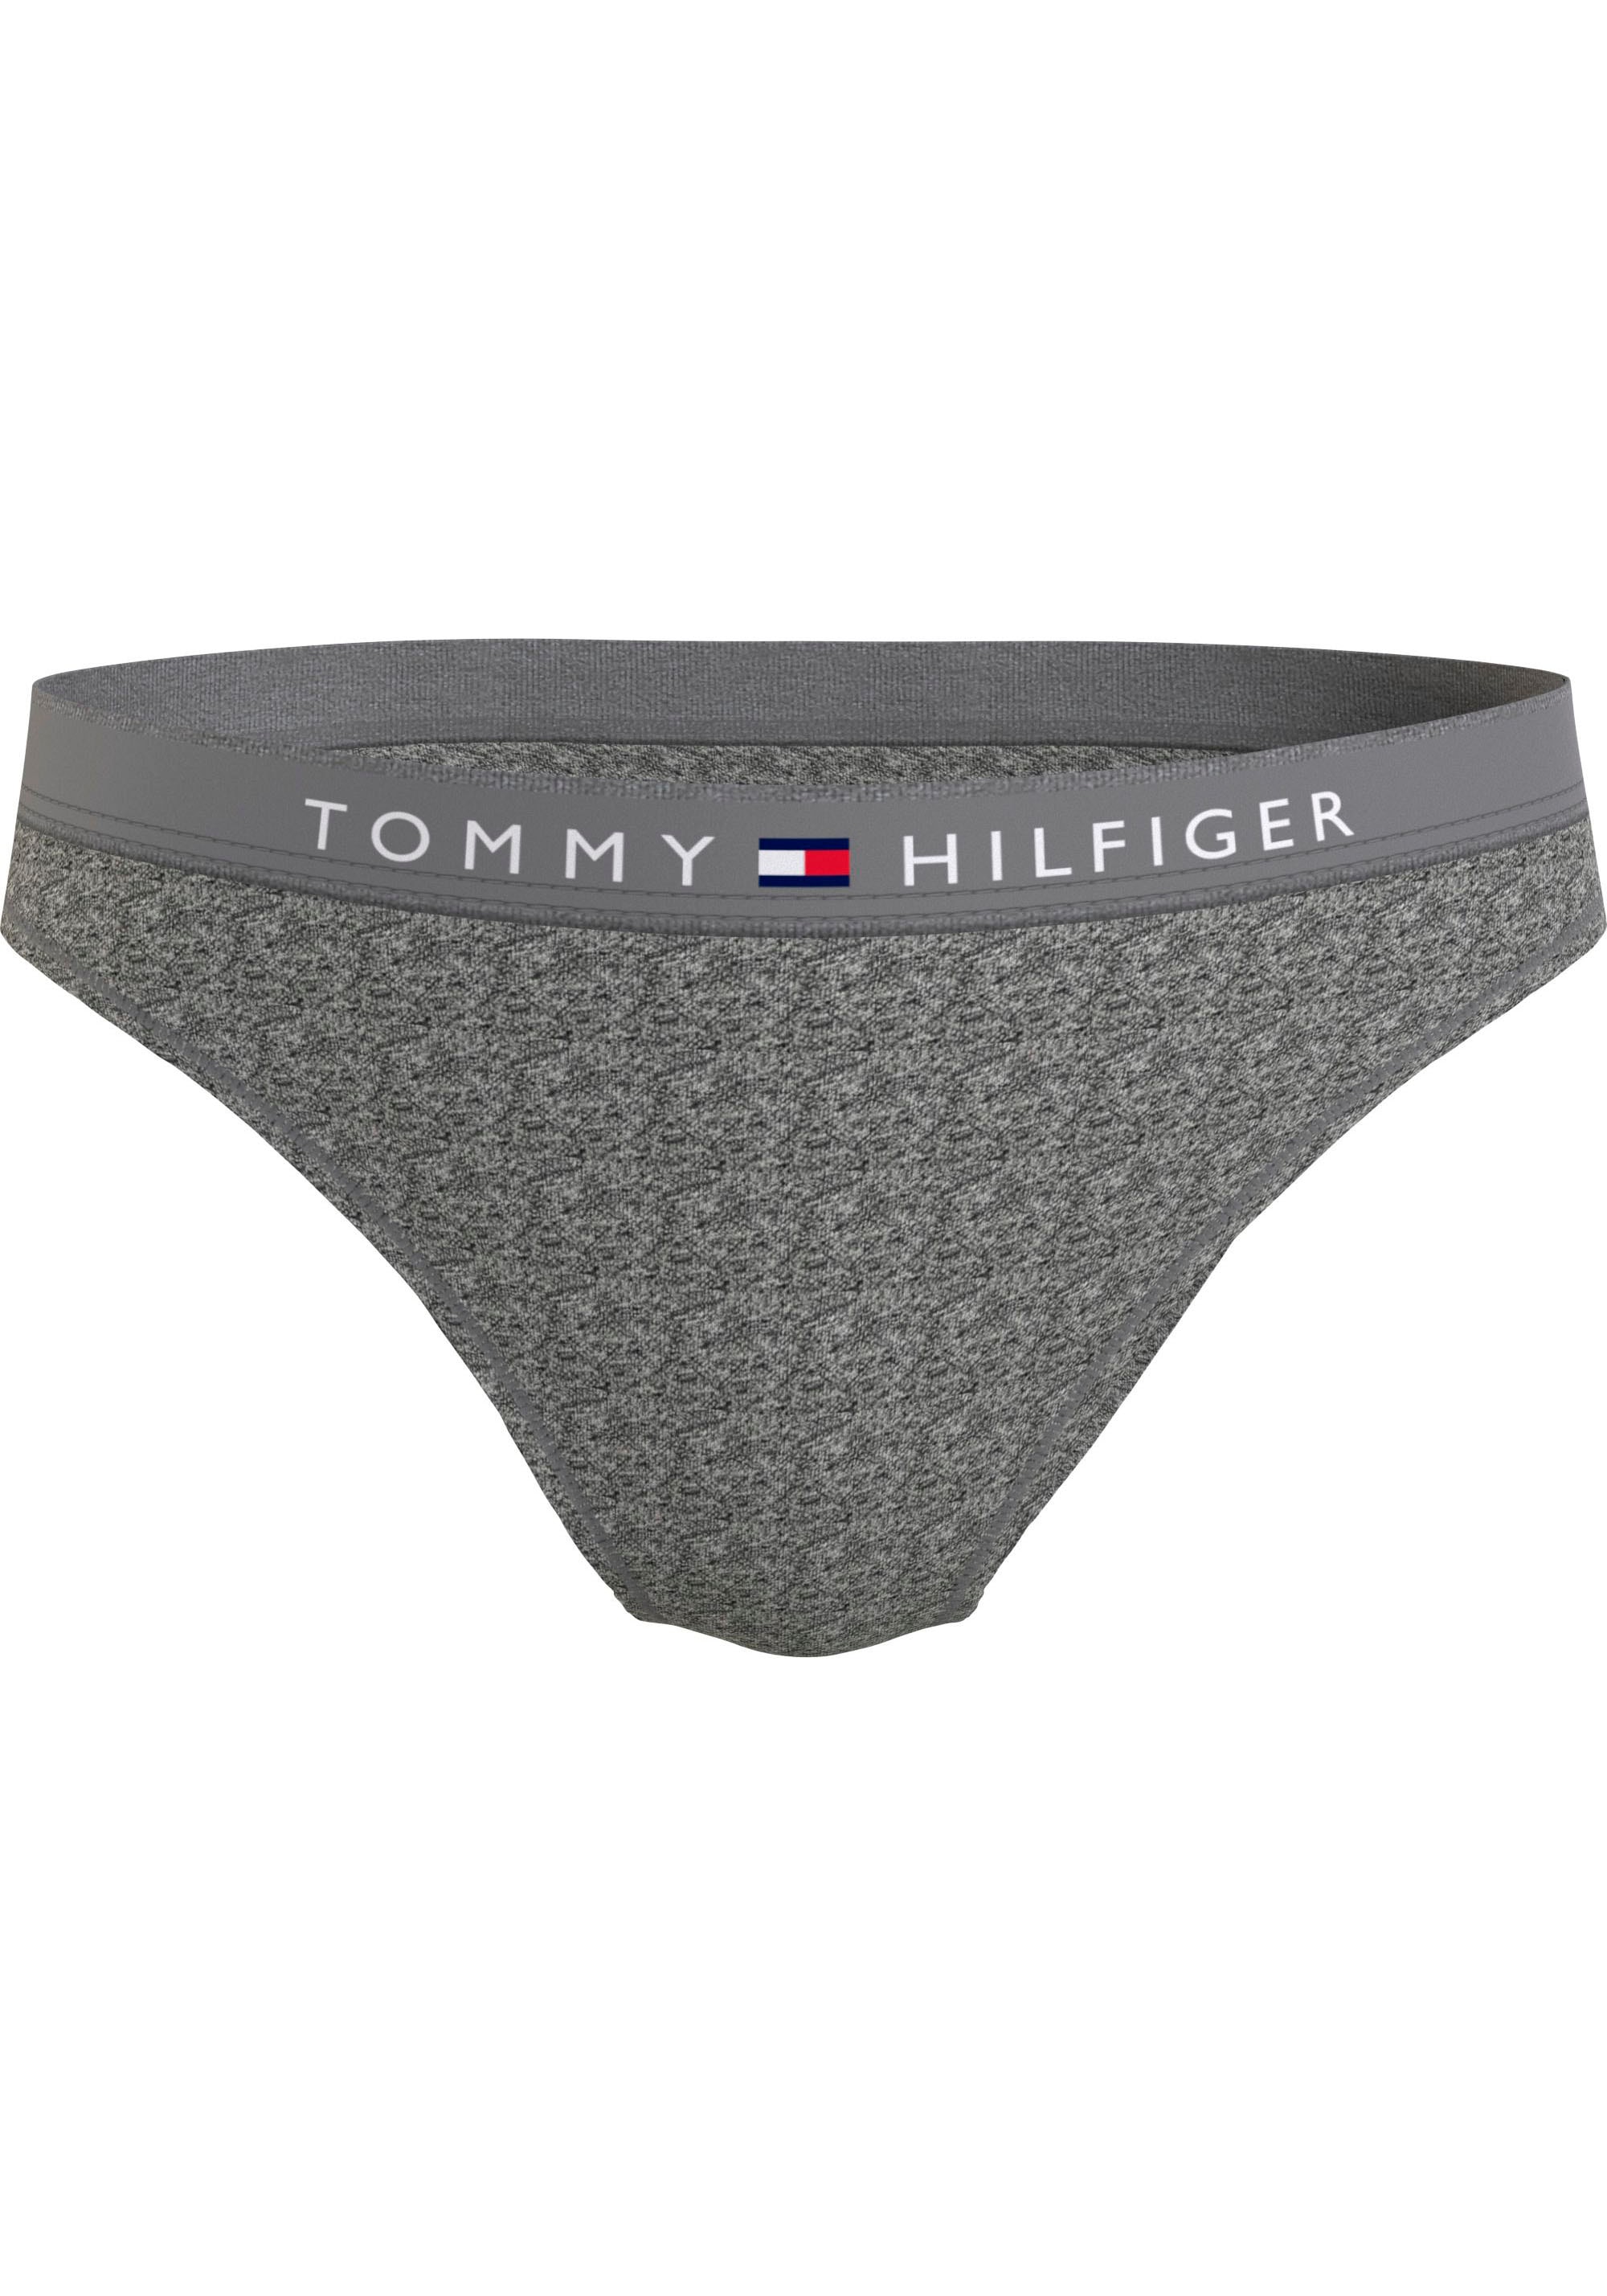 Tommy Hilfiger Underwear bei Bikinislip SIZES)«, »BIKINI Hilfiger mit Tommy ♕ (EXT Logobund